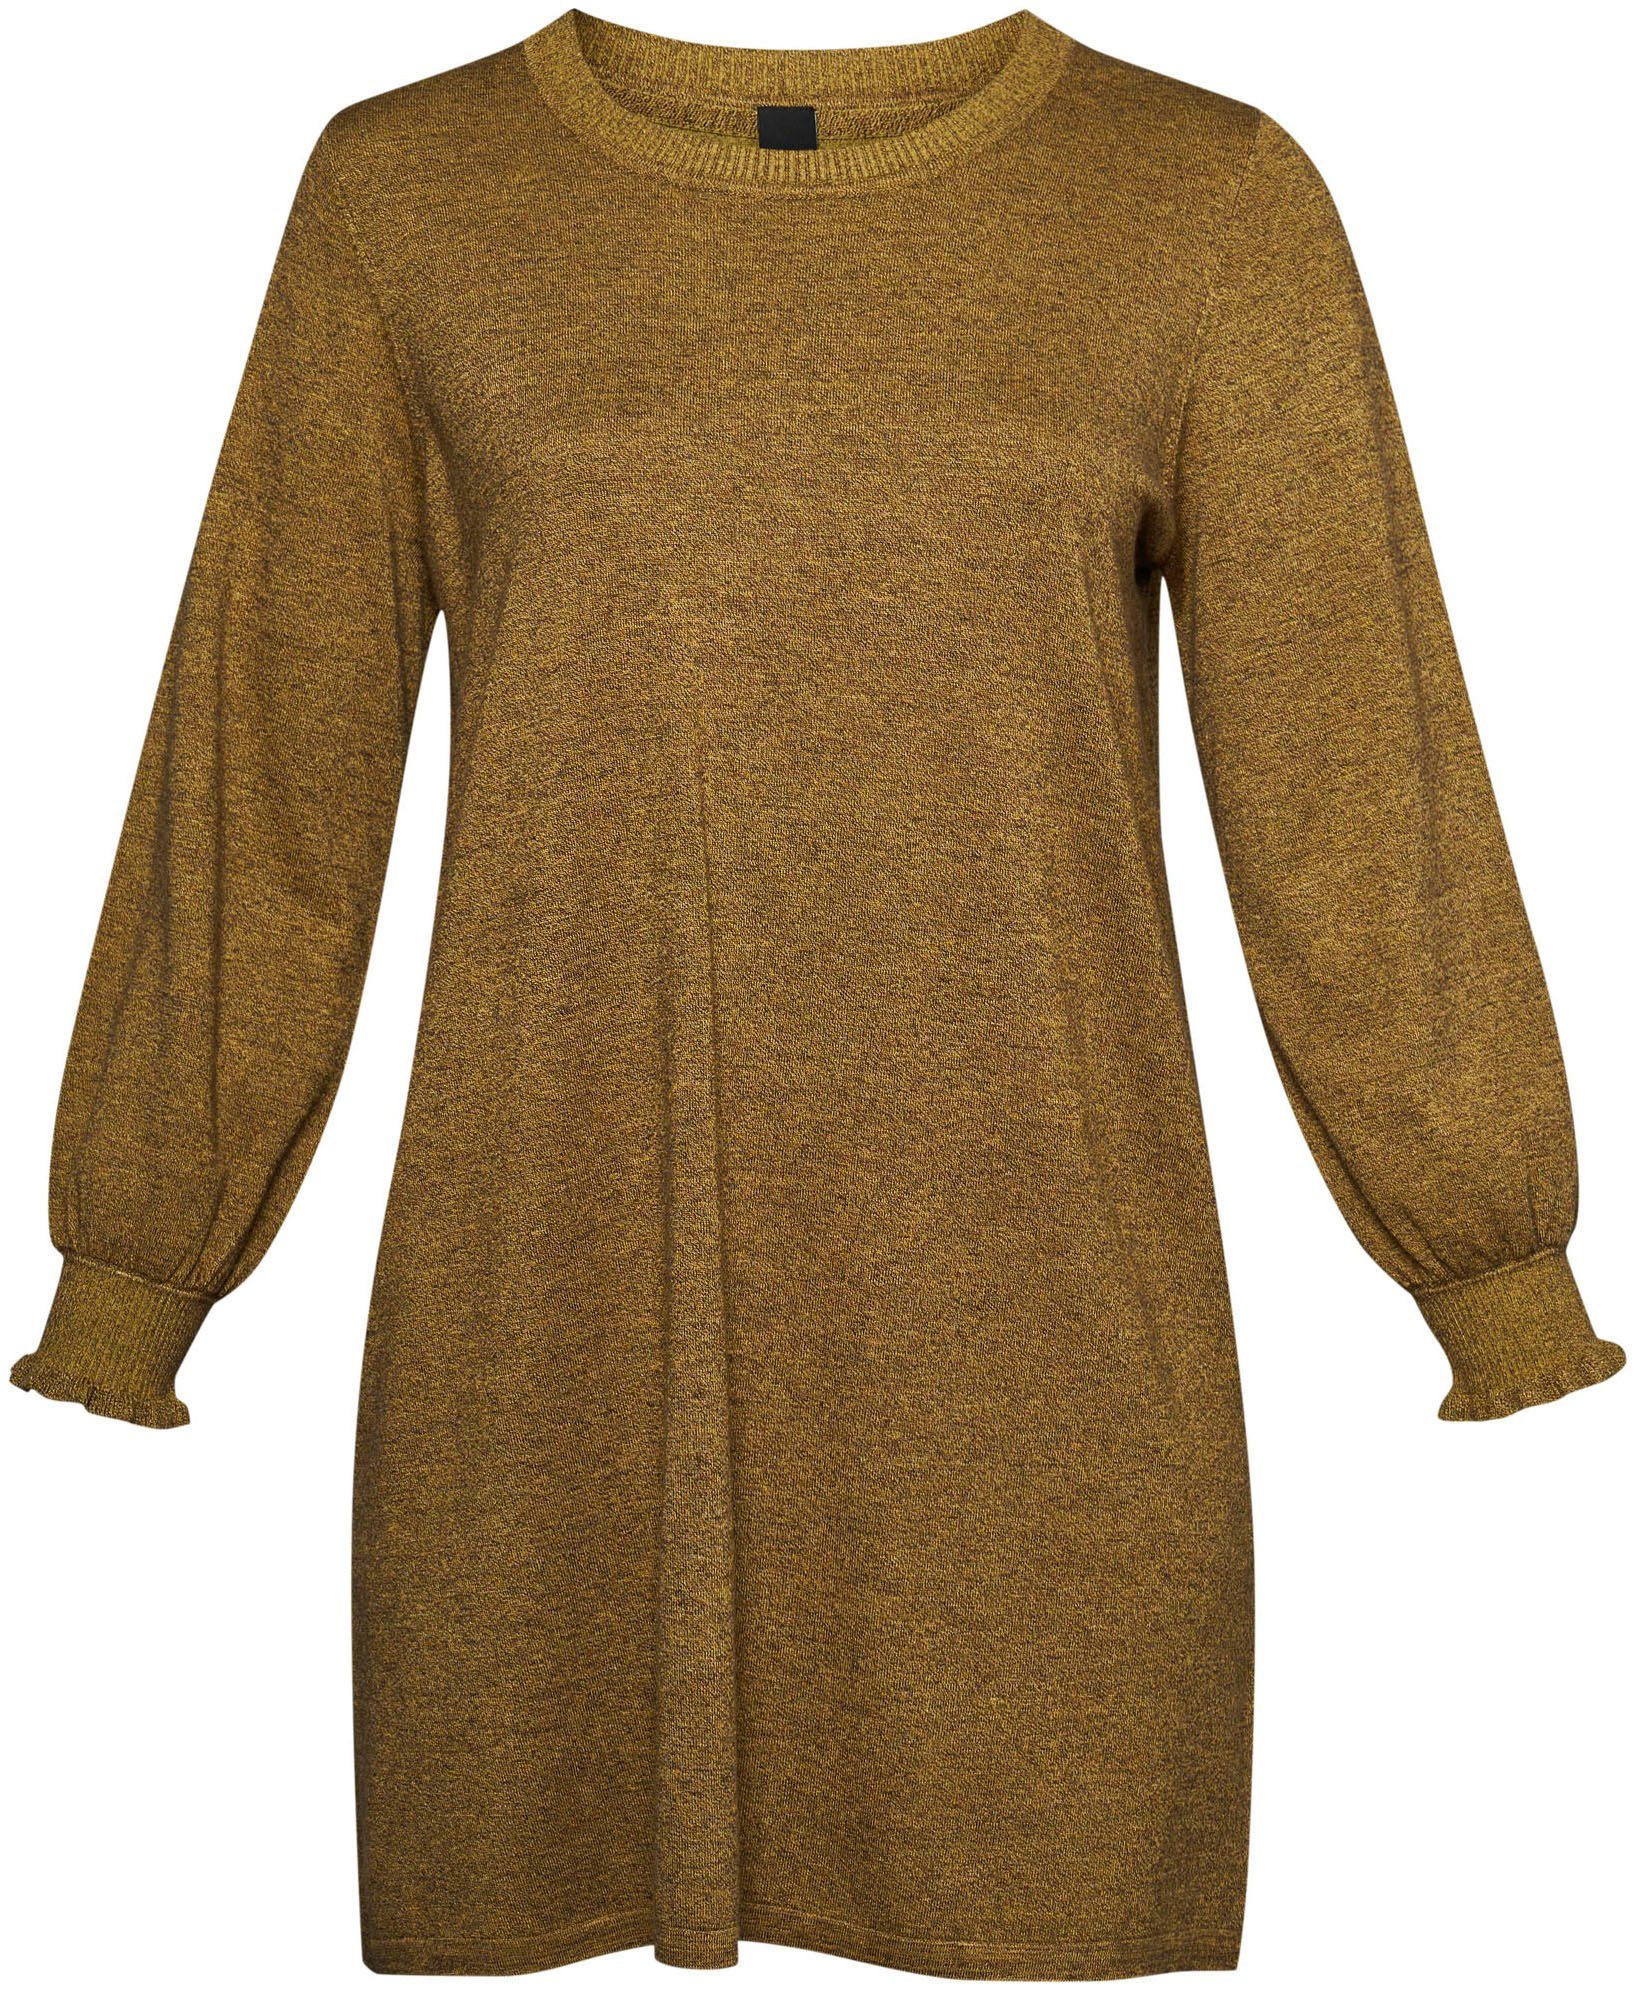 Ärmelabschluss am Sweatkleid Dress Rüschen autumn mos Knit mit AD ADIA